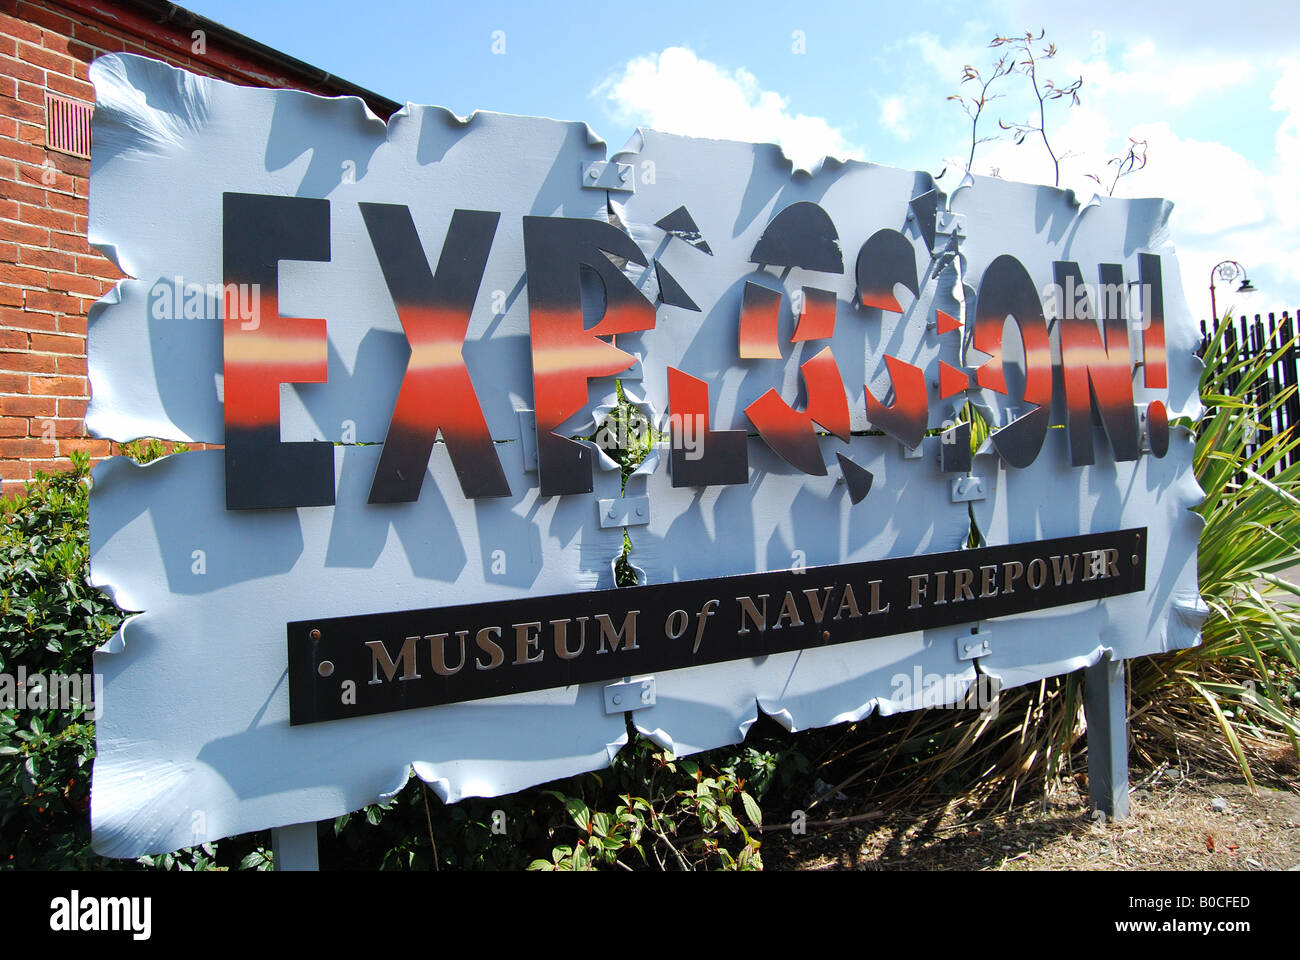 'Explosion' Museum of Naval panneau d'entrée de puissance de feu, de Gosport, Hampshire, Angleterre, Royaume-Uni Banque D'Images